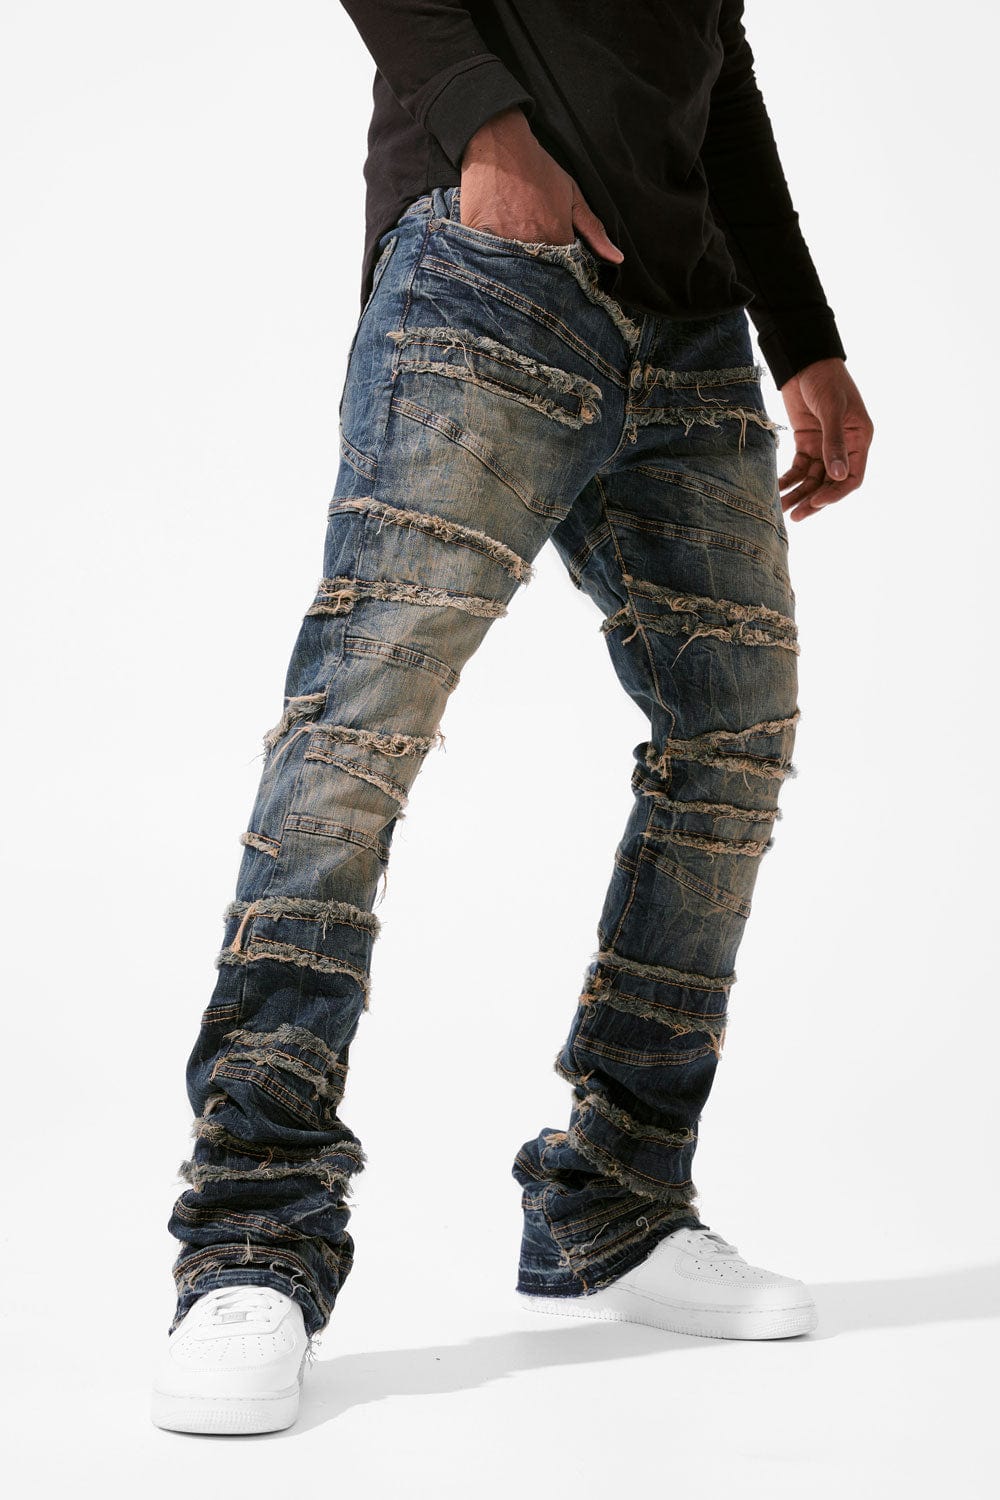 Martin Stacked - Psychosis Denim Jeans - Dark Vintage